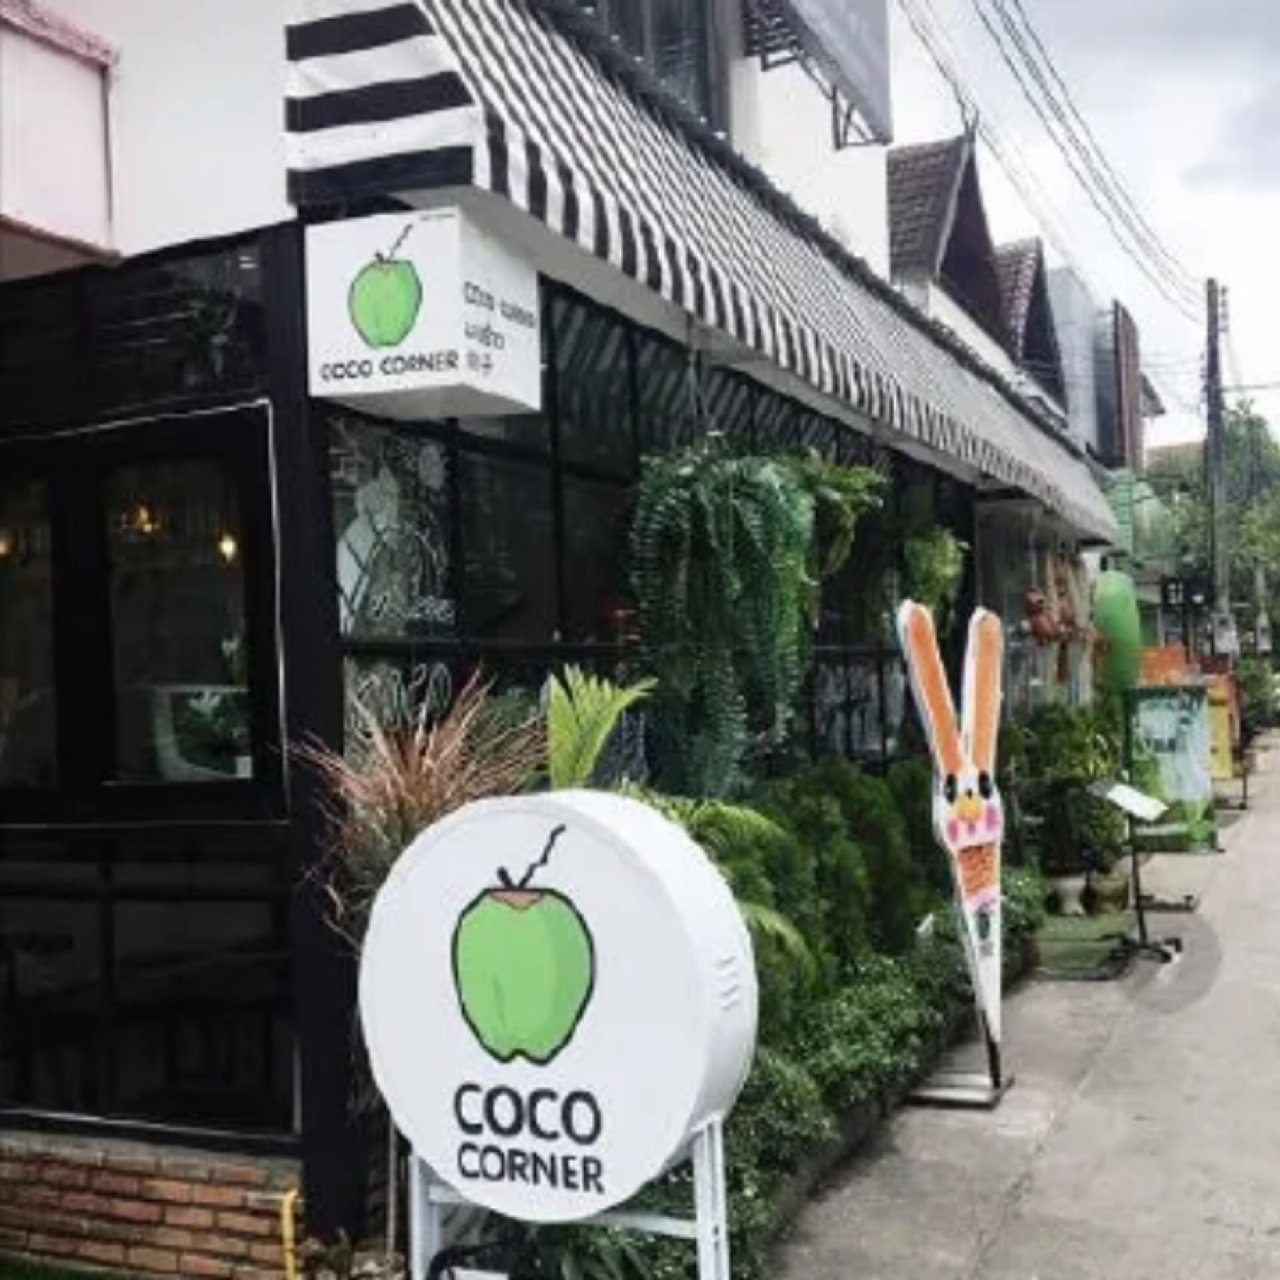 Coco corner 